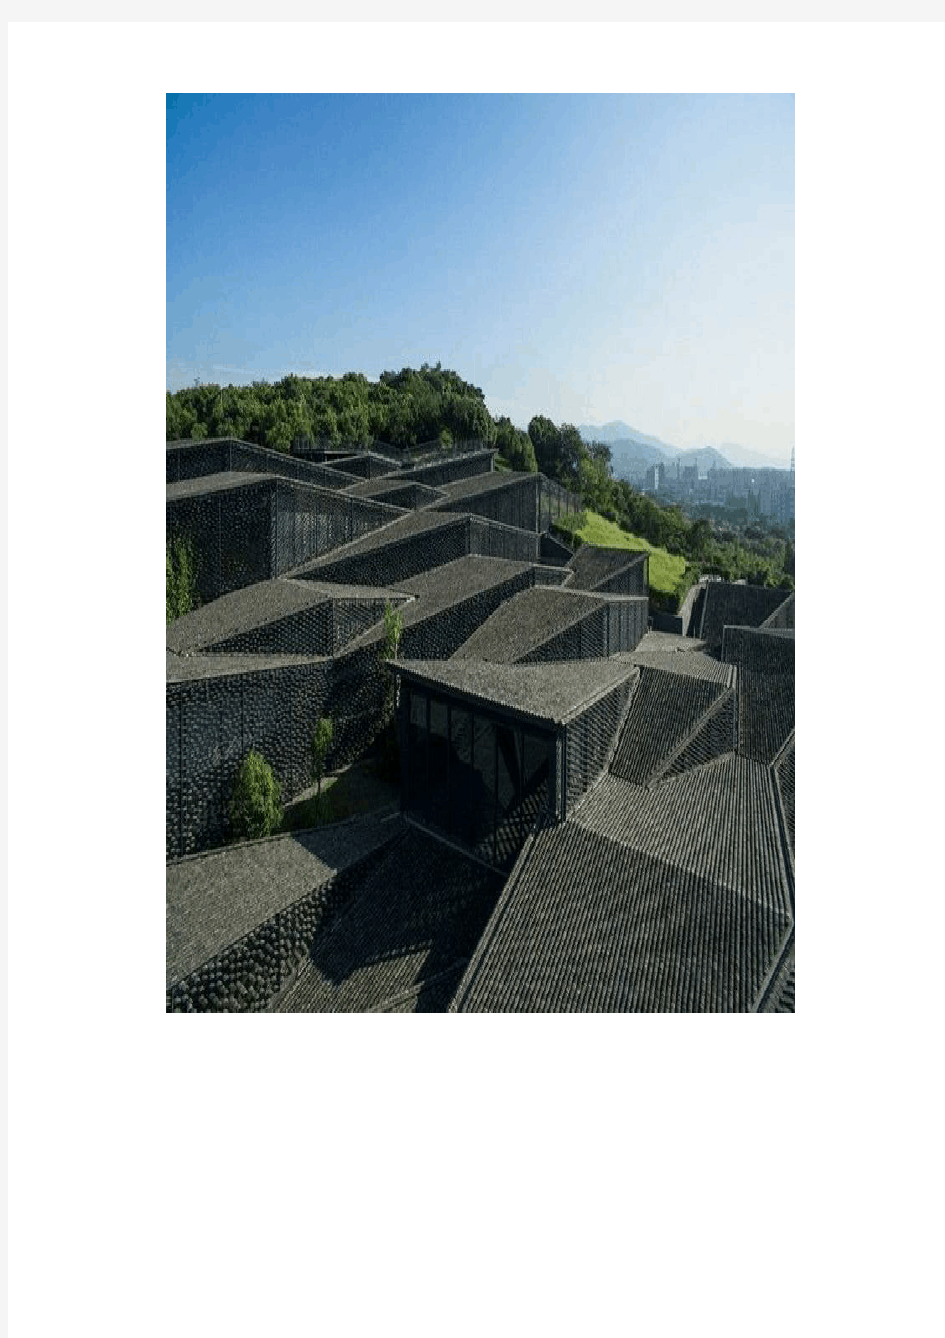 建筑师隈研吾为杭州设计的民艺博物馆值得一看